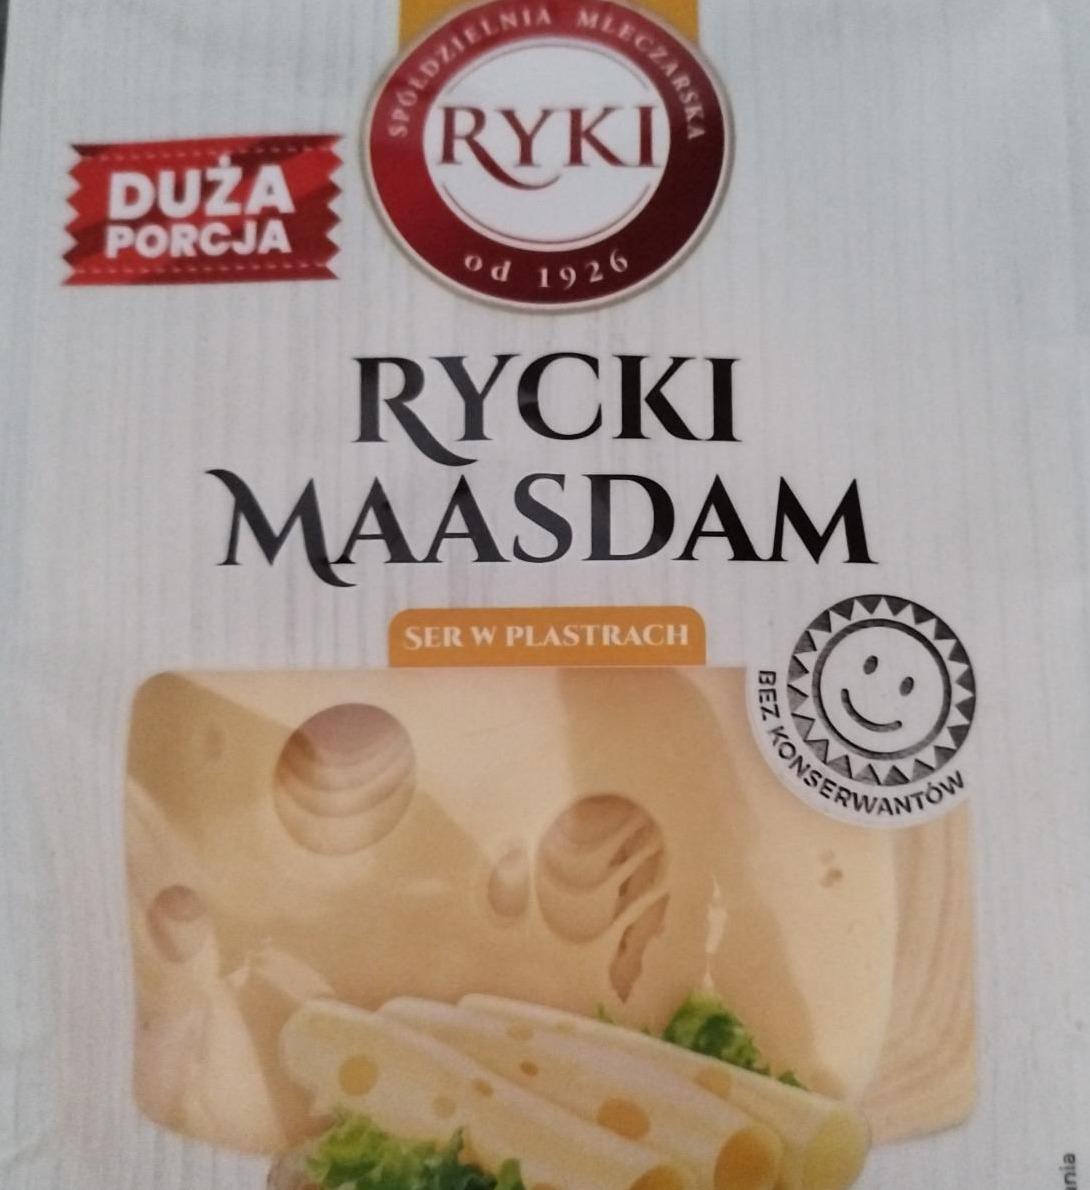 Zdjęcia - Rycki maasdam ser w plastrach Ryki